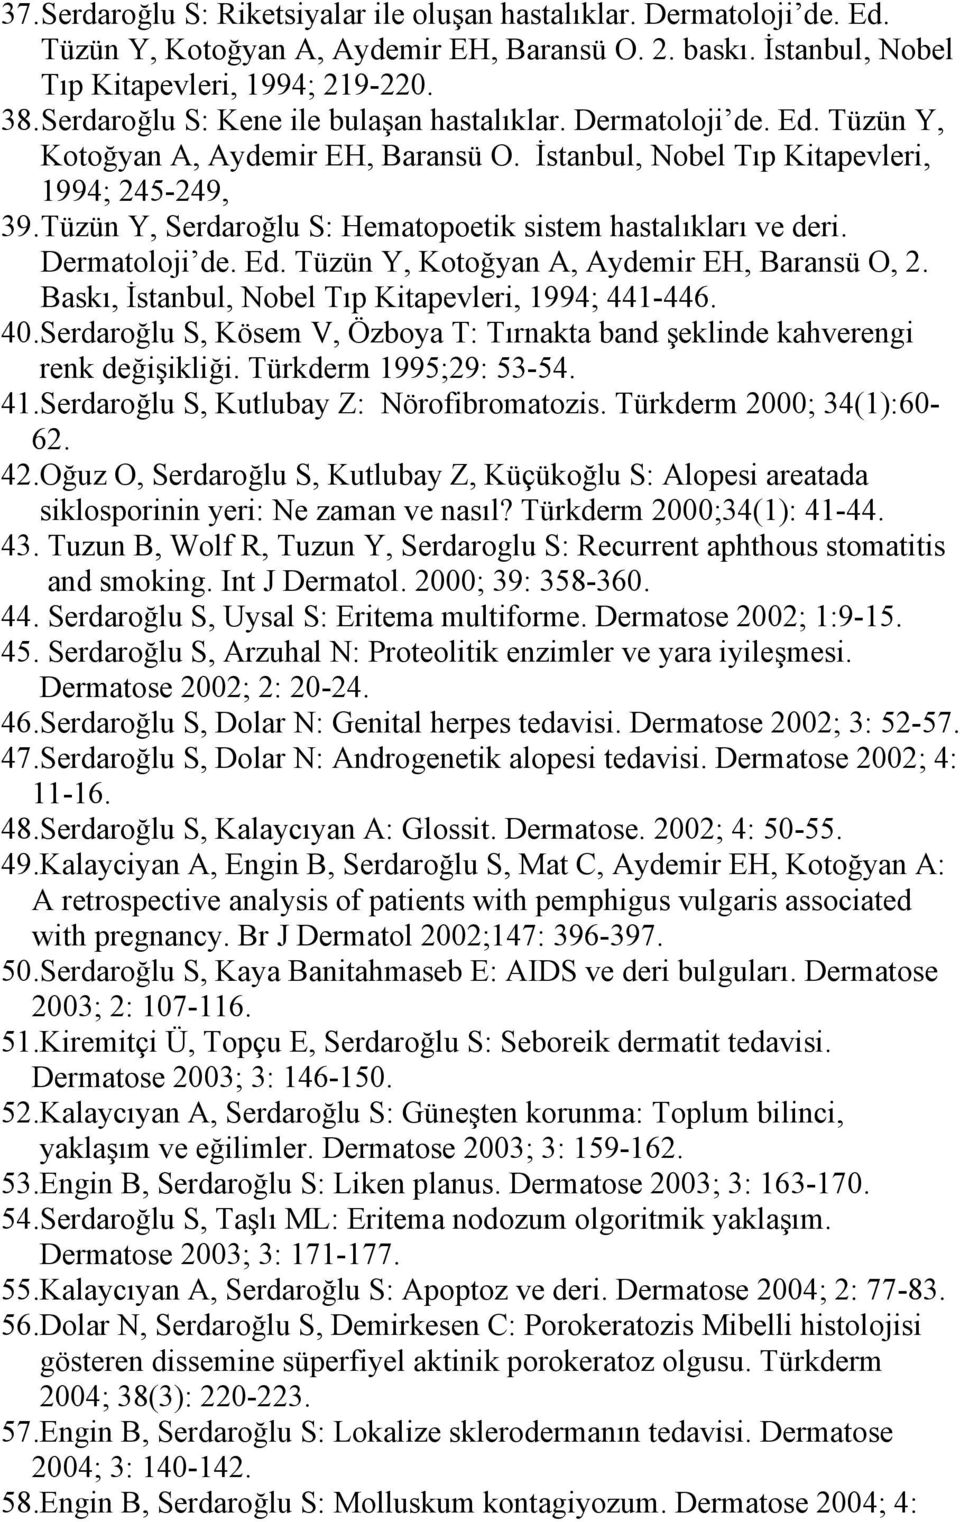 Tüzün Y, Serdaroğlu S: Hematopoetik sistem hastalıkları ve deri. Dermatoloji de. Ed. Tüzün Y, Kotoğyan A, Aydemir EH, Baransü O, 2. Baskı, İstanbul, Nobel Tıp Kitapevleri, 1994; 441-446. 40.